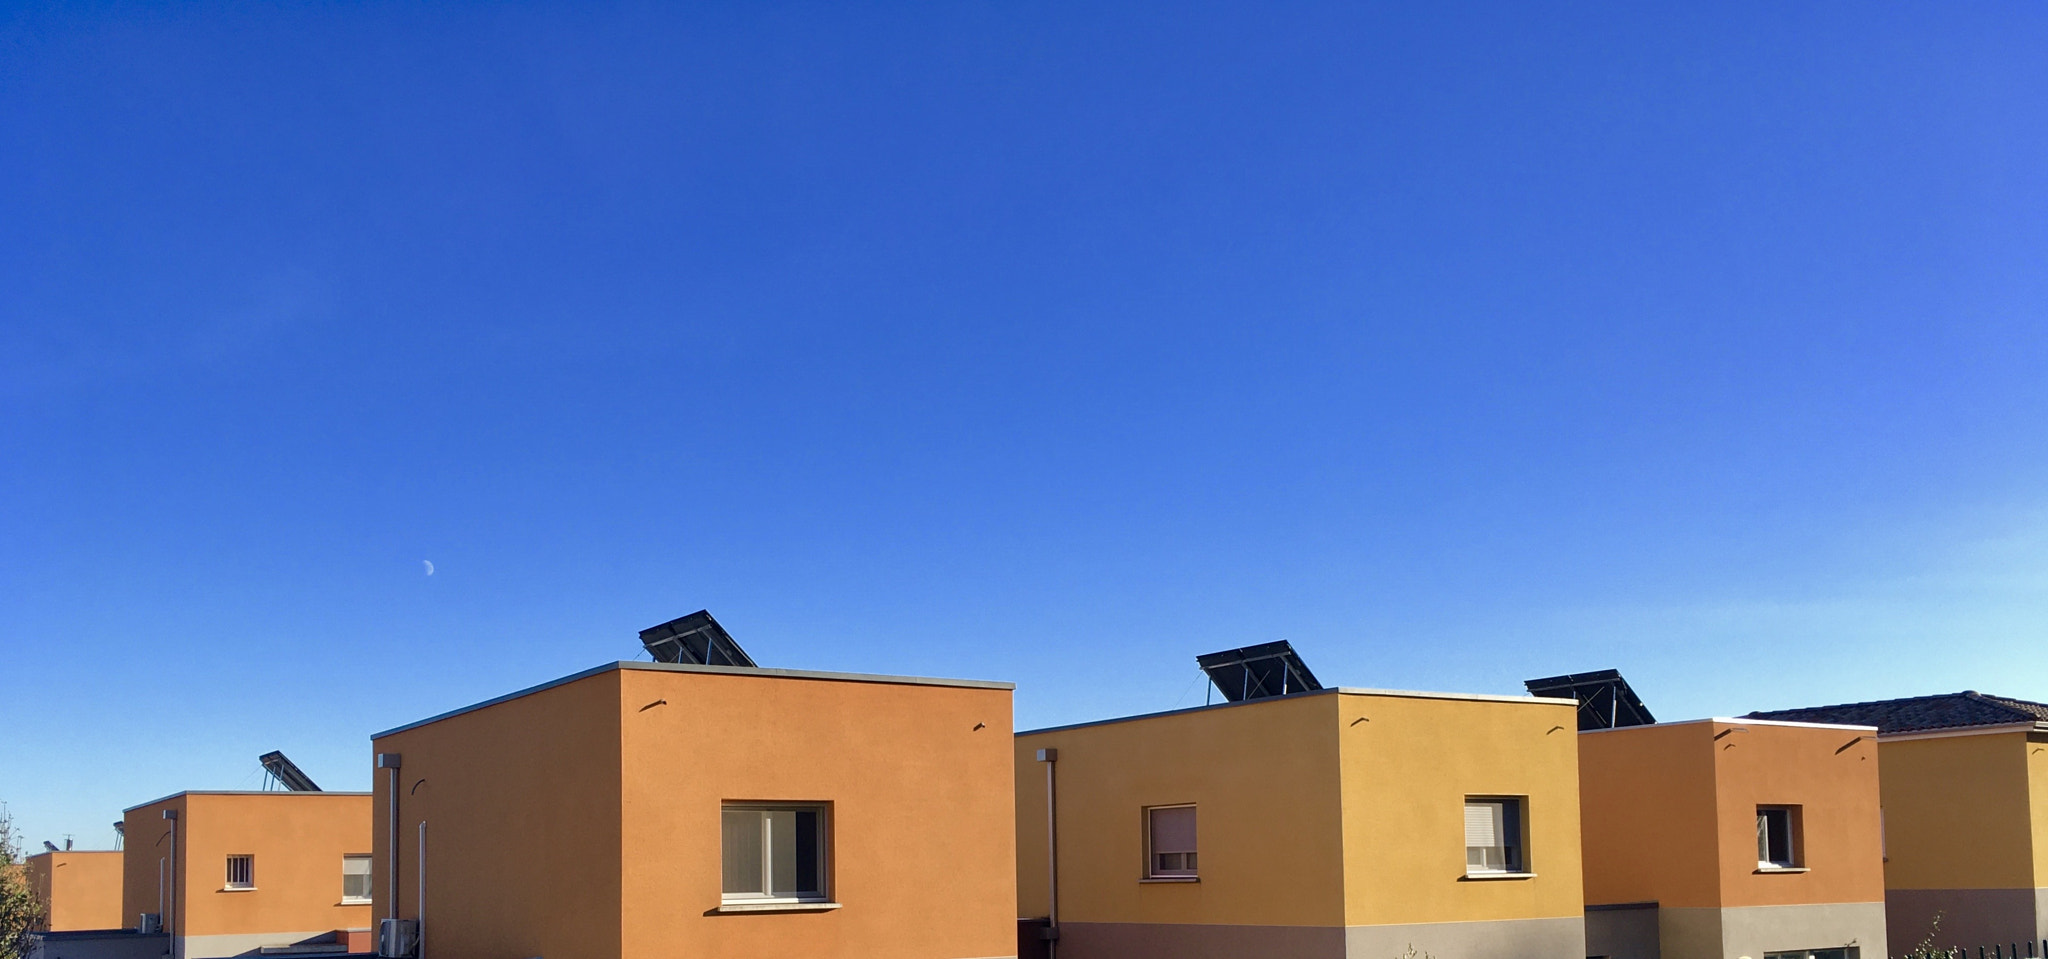 Orange houses against blue sky